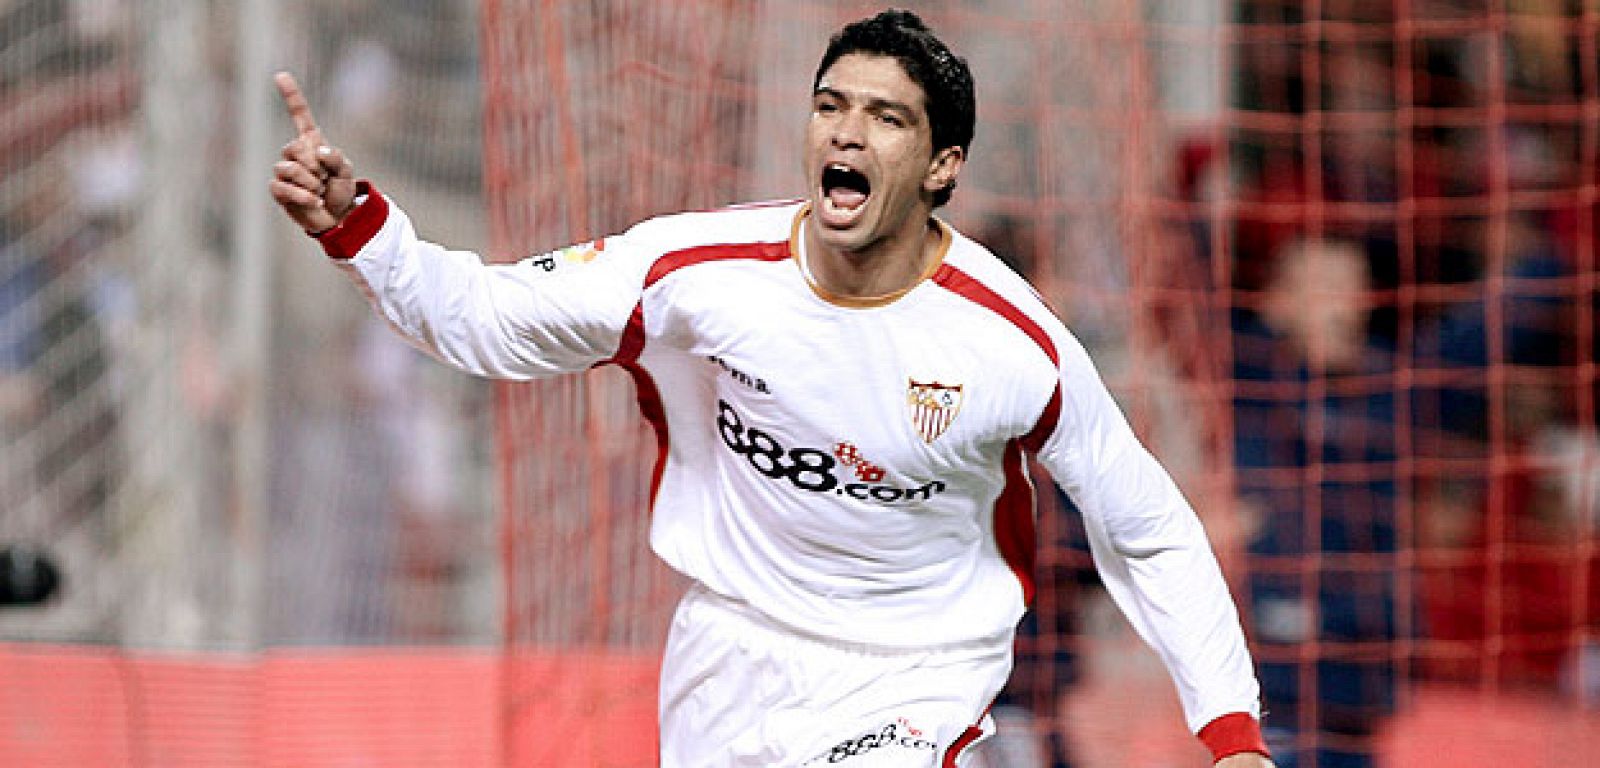 El delantero brasileño del Sevilla Renato Dirnei celebra el primer gol marcado ante el Villarreal.